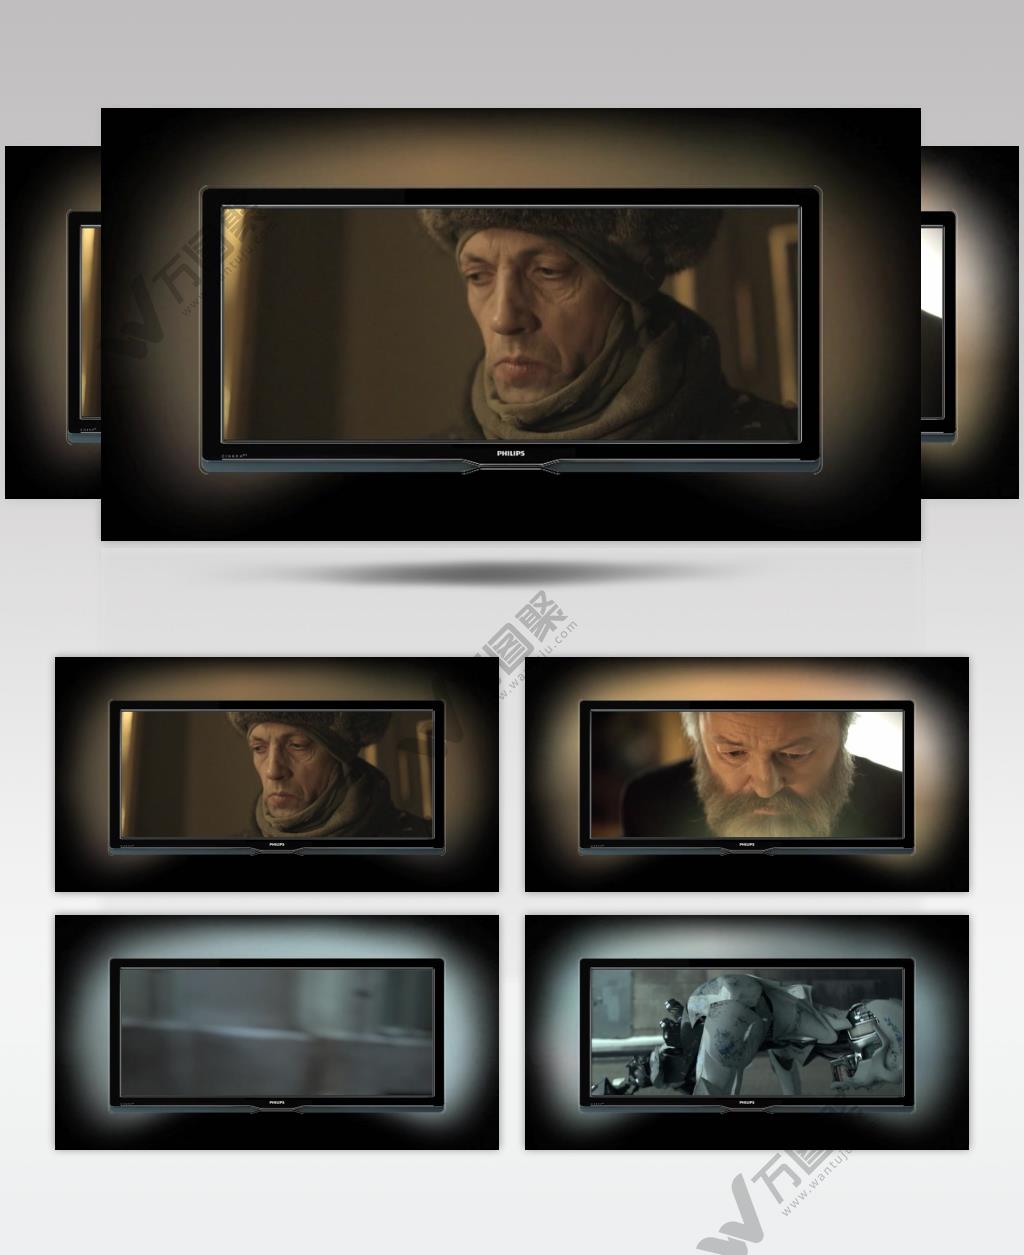 日本高清广告Philips Cinema - Parallel Lines - The Gift, by Carl Erik RinschPhilips Cinema - Parallel Lines高清短片系列广告视频